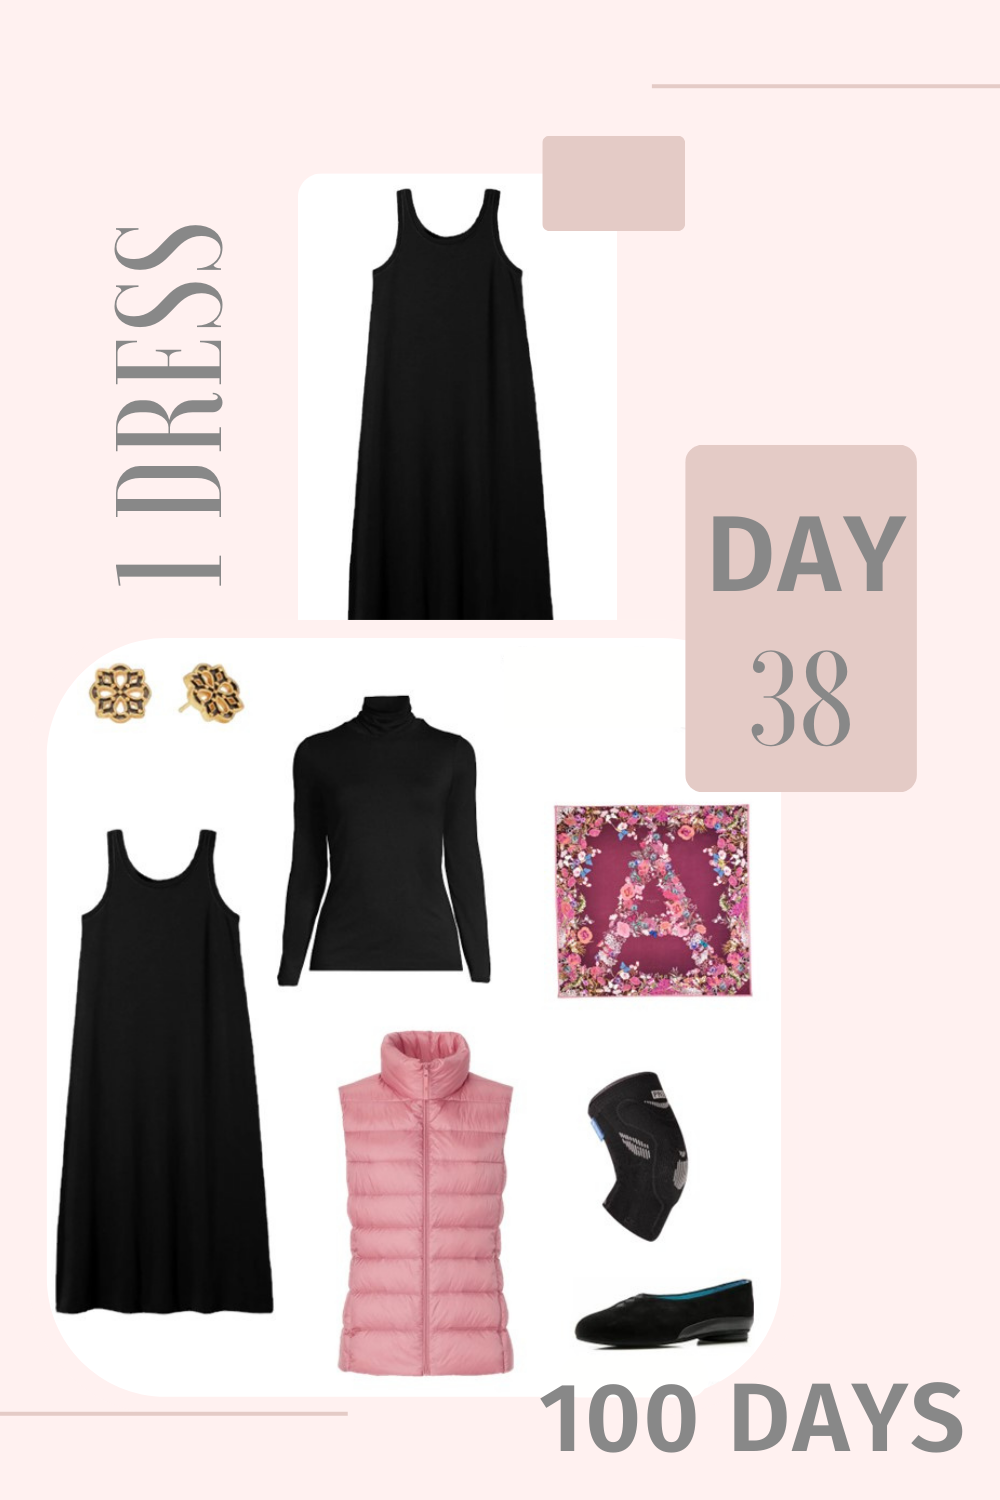 1 Dress 100 Days - Day 38